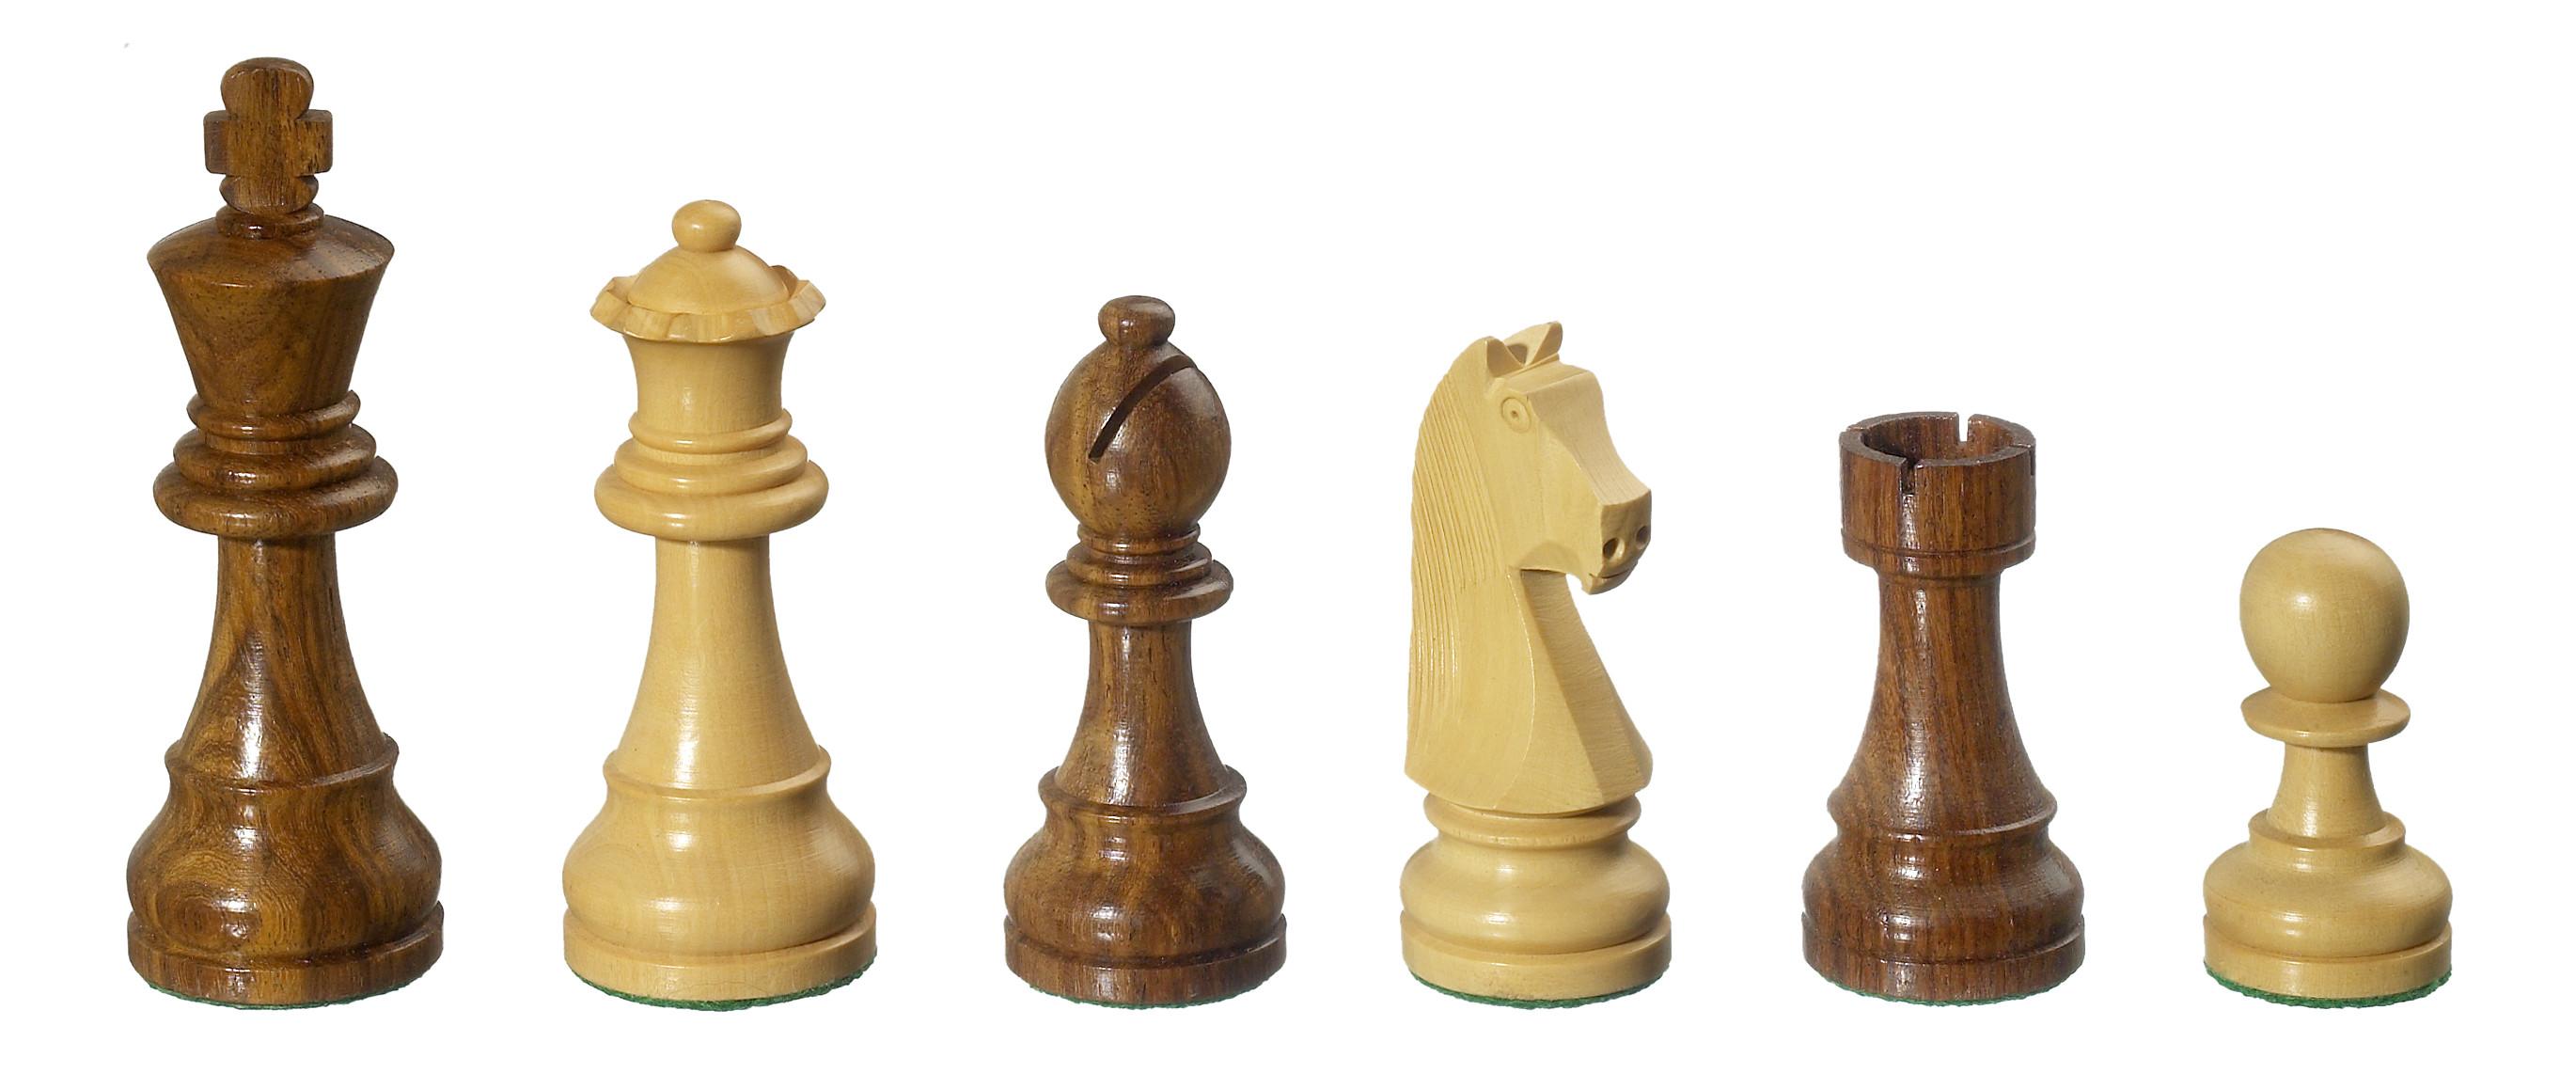 Schachfiguren Arcadius, Königshöhe 95 mm, braun natur, im neutralen Karton